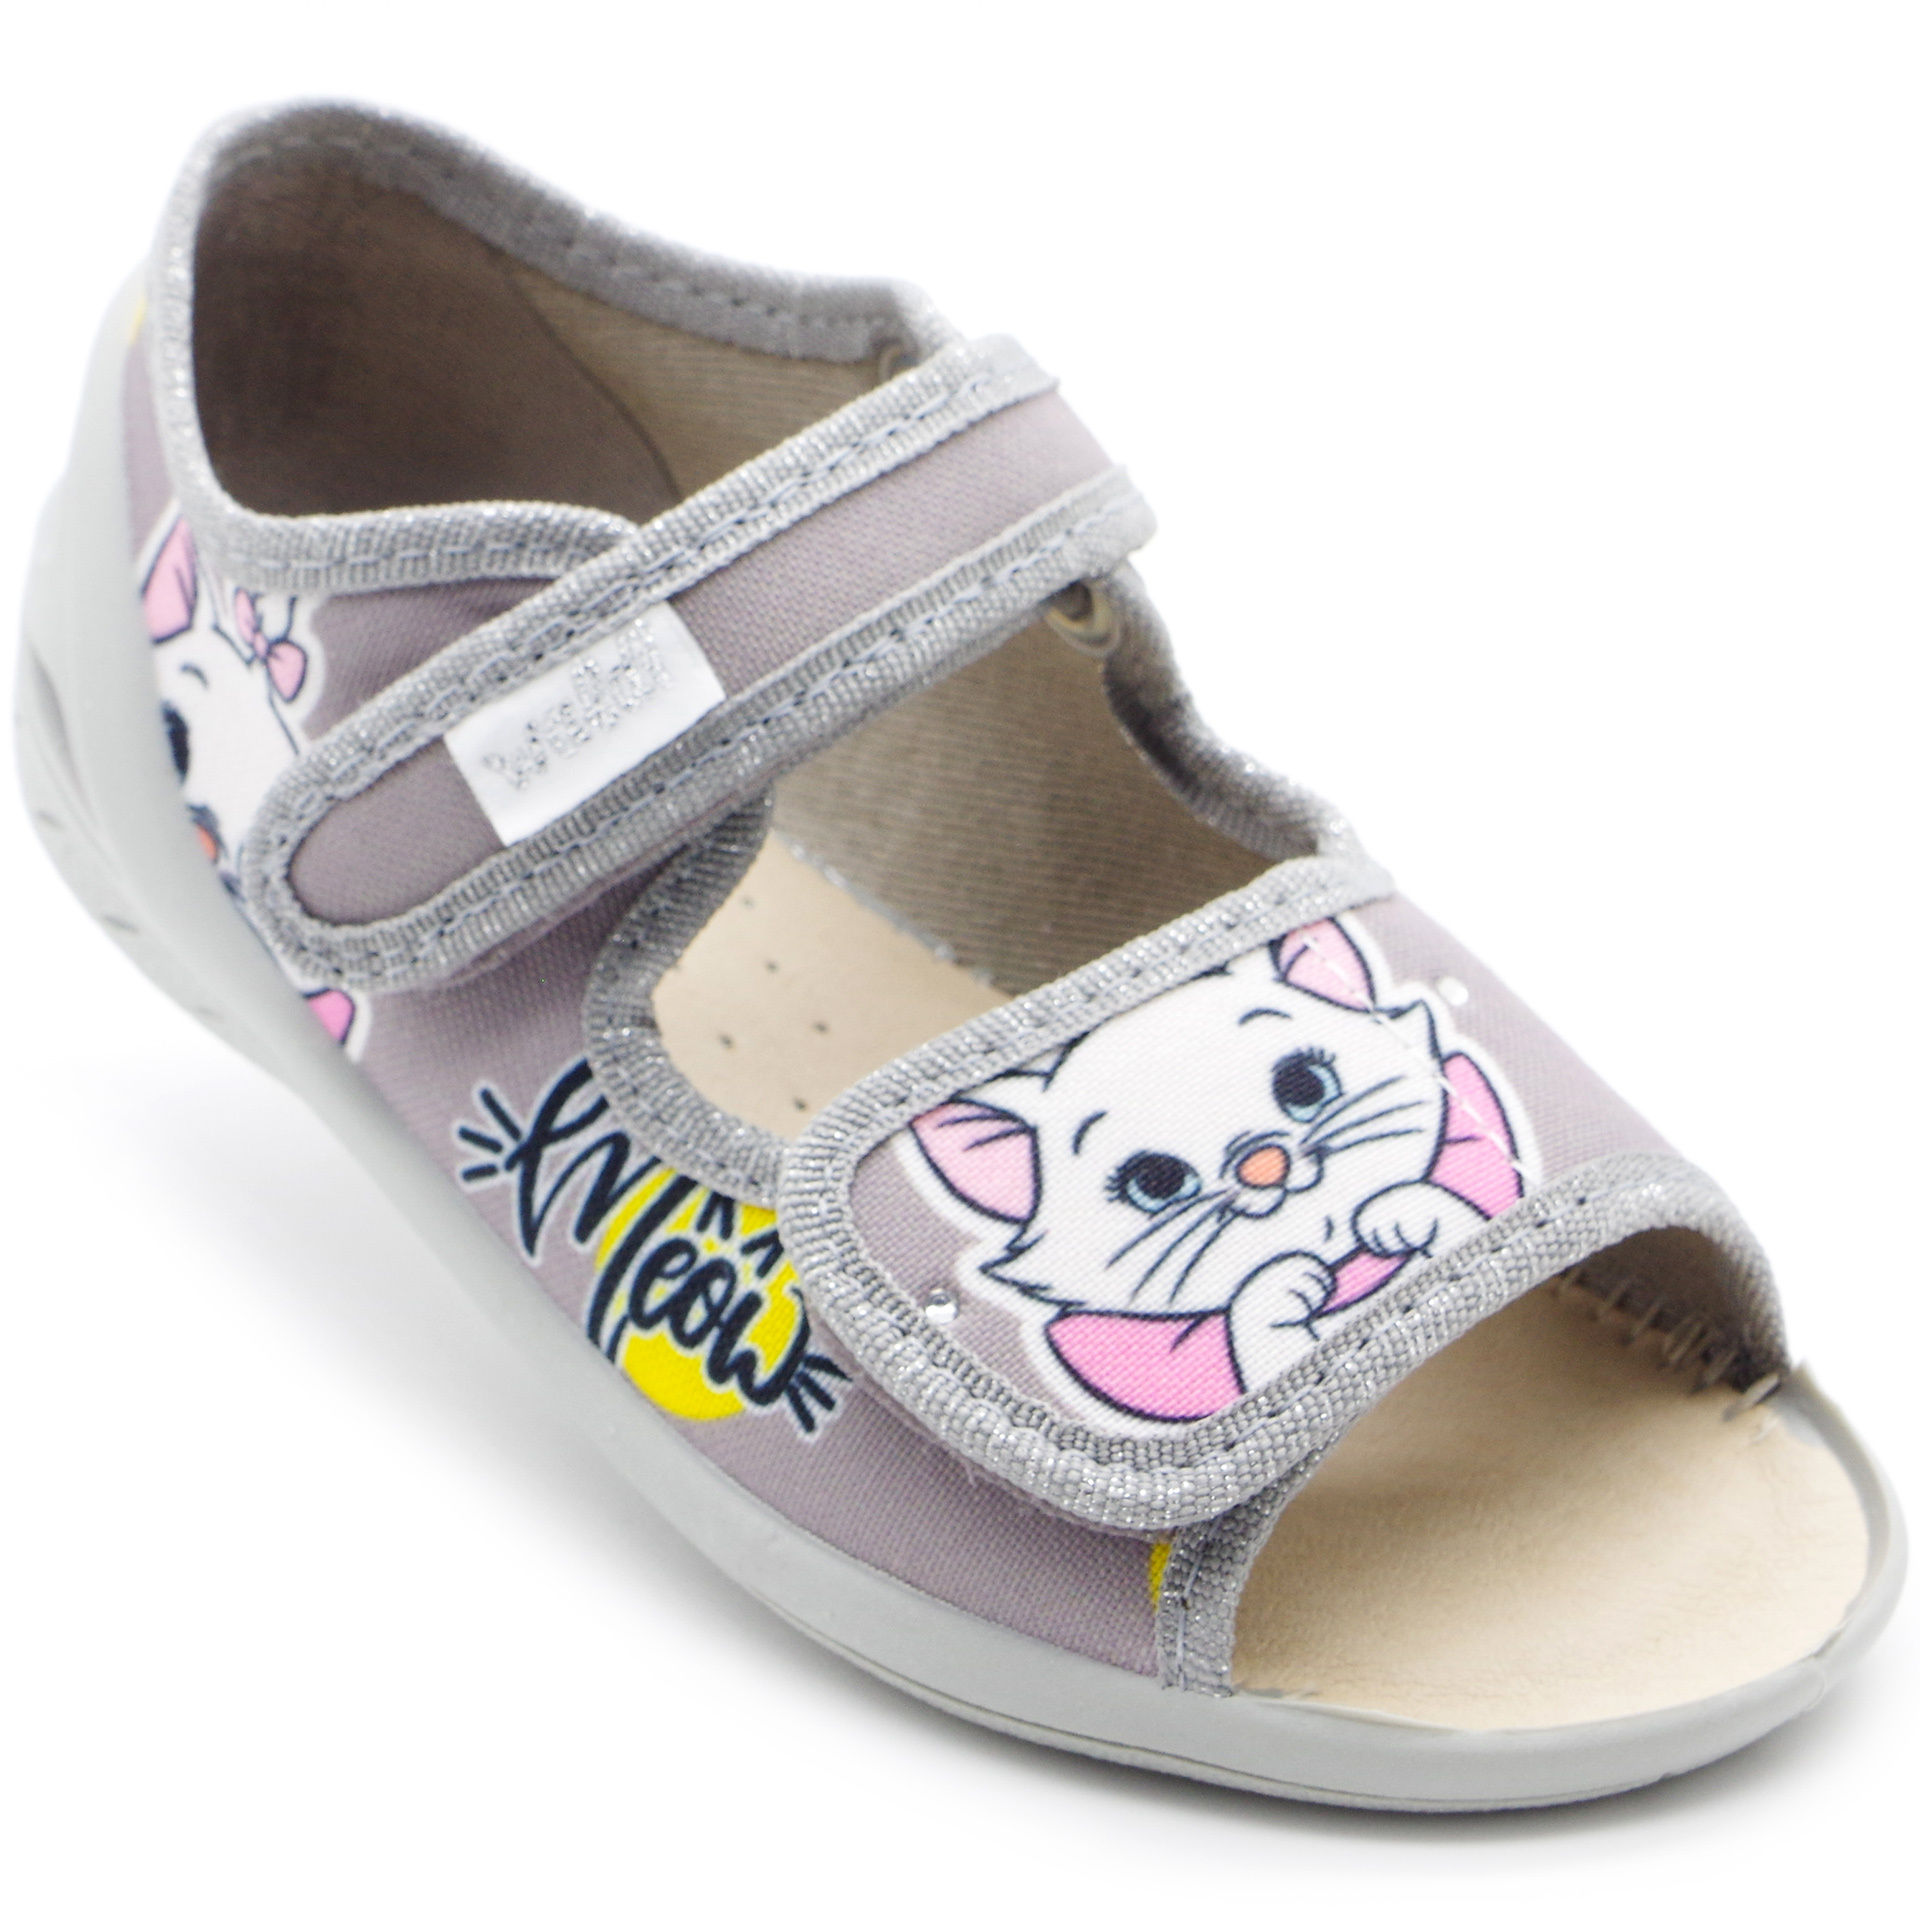 Текстильная обувь для девочек Тапочки Ева (2293) цвет Серый 23-30 размеры – Sole Kids